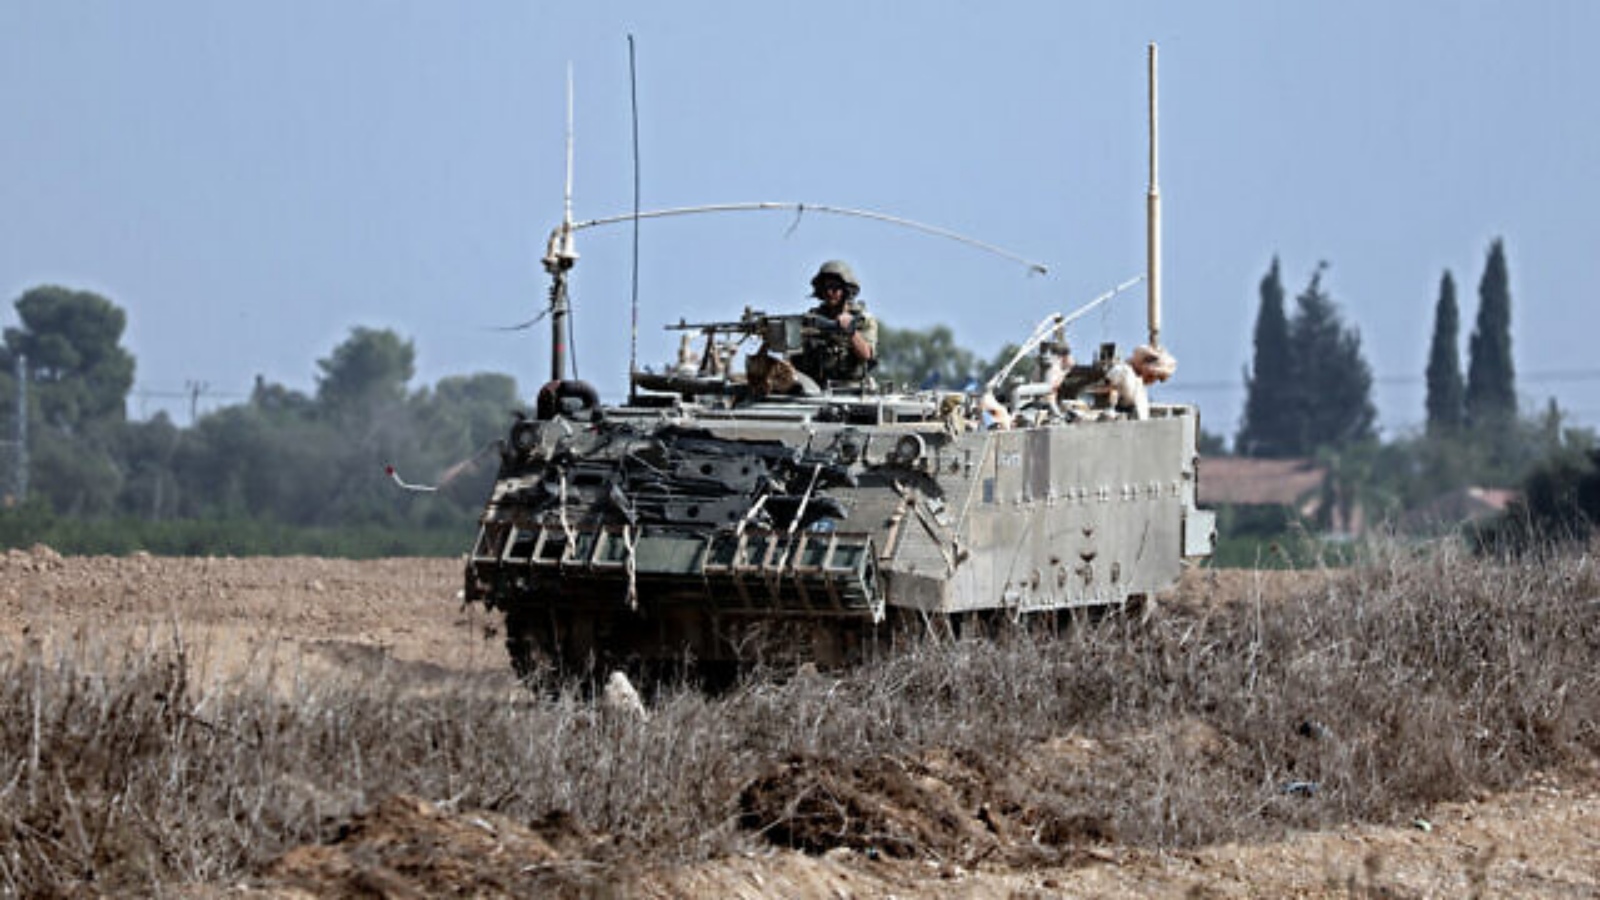 ناقلة جنود مدرعة تابعة للجيش الإسرائيلي تتقدم في حقل بالقرب من مدينة سديروت بجنوب إسرائيل، في 23 أكتوبر 2023، وسط معارك مستمرة بين إسرائيل وحركة حماس الفلسطينية